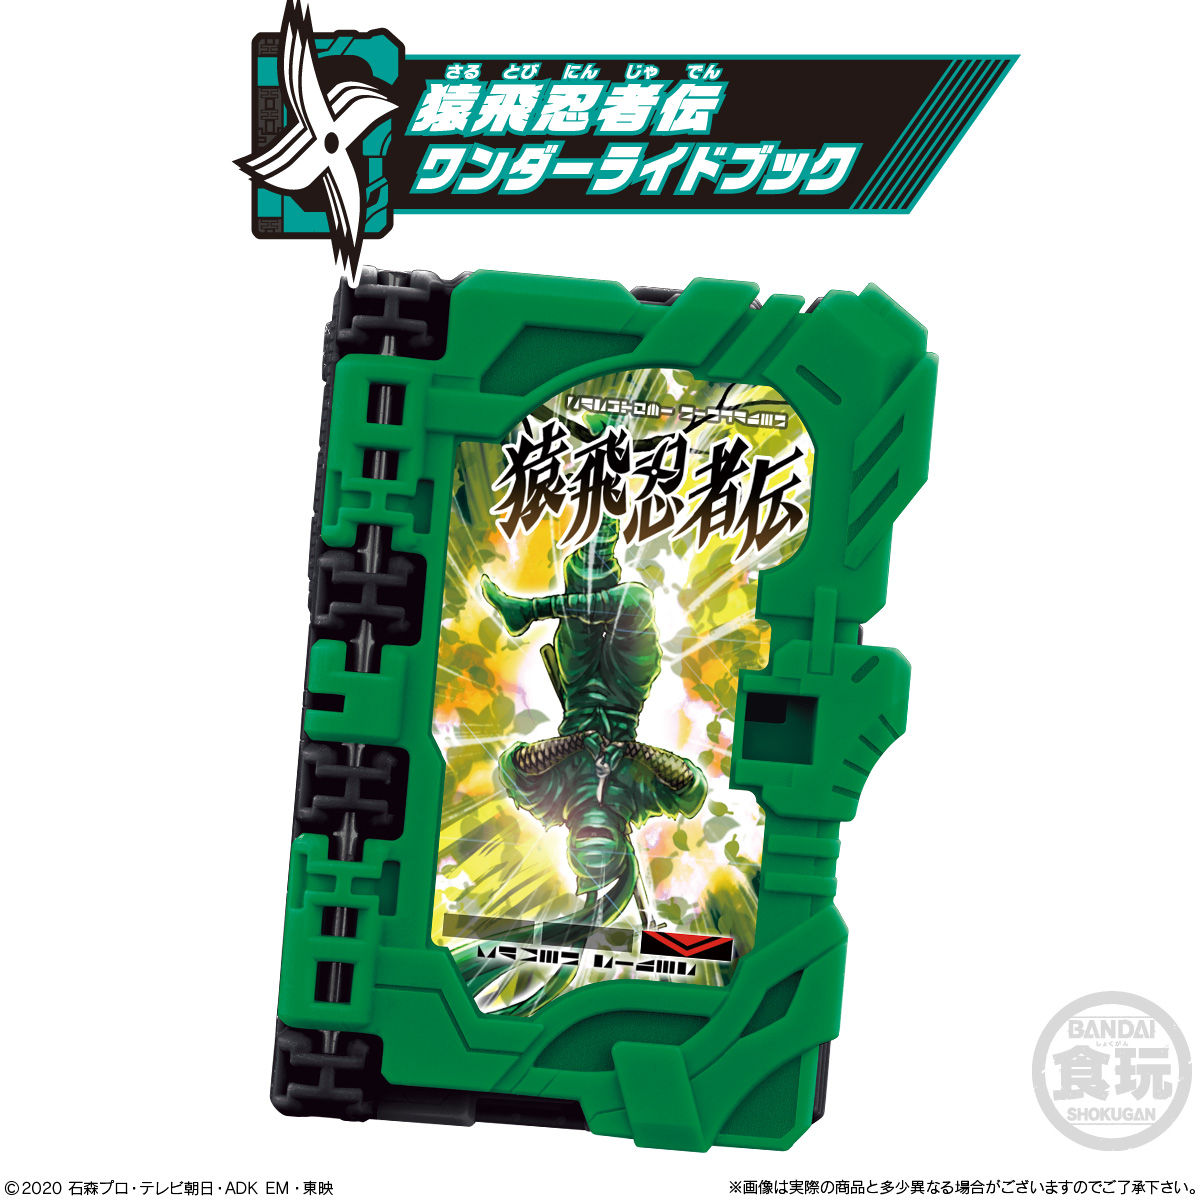 【食玩】仮面ライダーセイバー『コレクタブルワンダーライドブック SG03』8個入りBOX-005